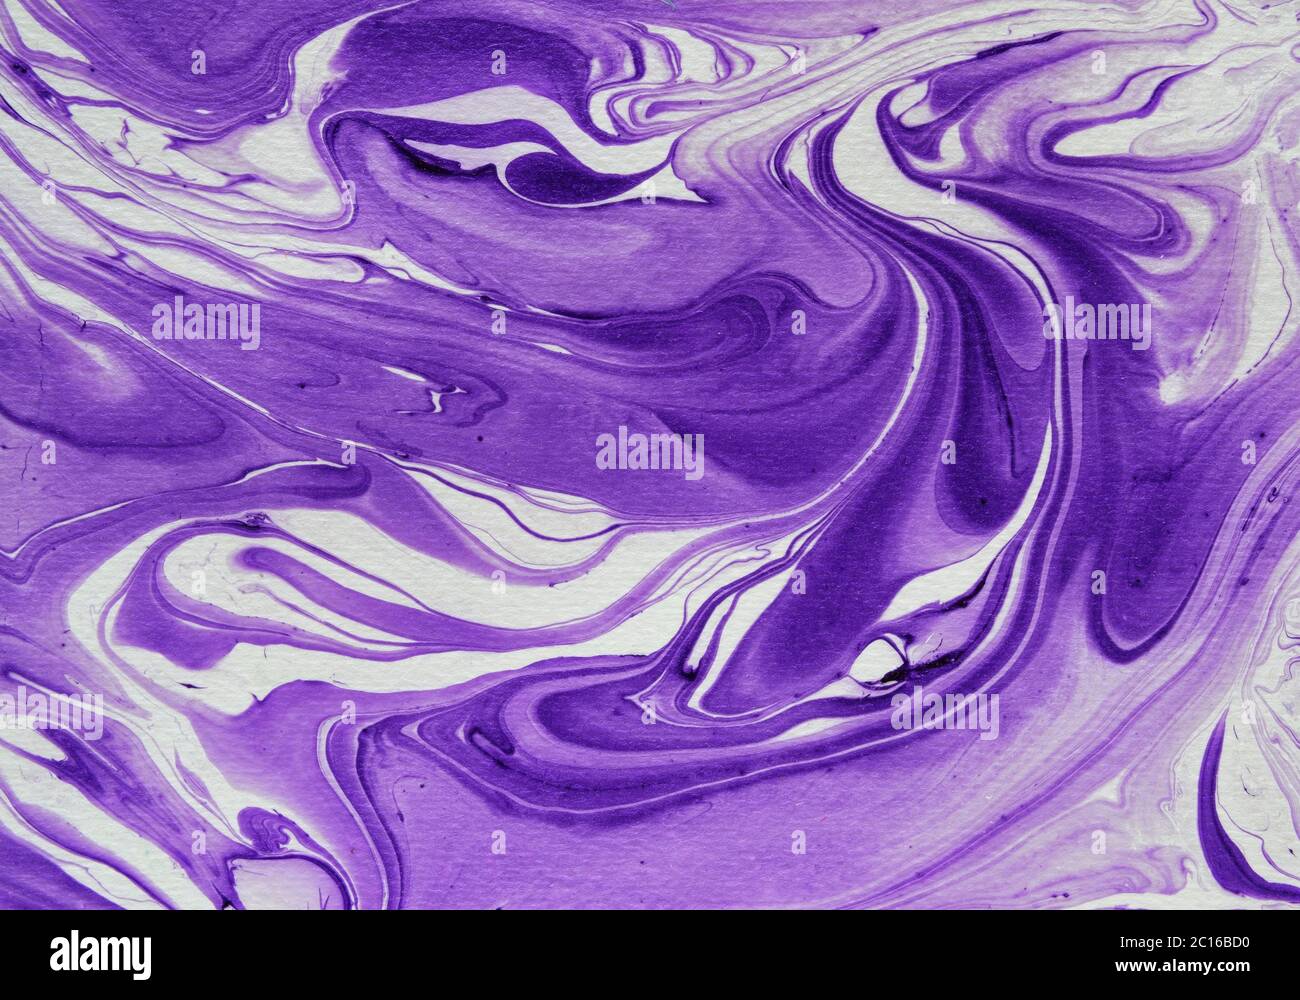 Effetto marmo texture di sfondo in tonalità viola con rotazioni fluide su bianco in una vista a cornice completa Foto Stock